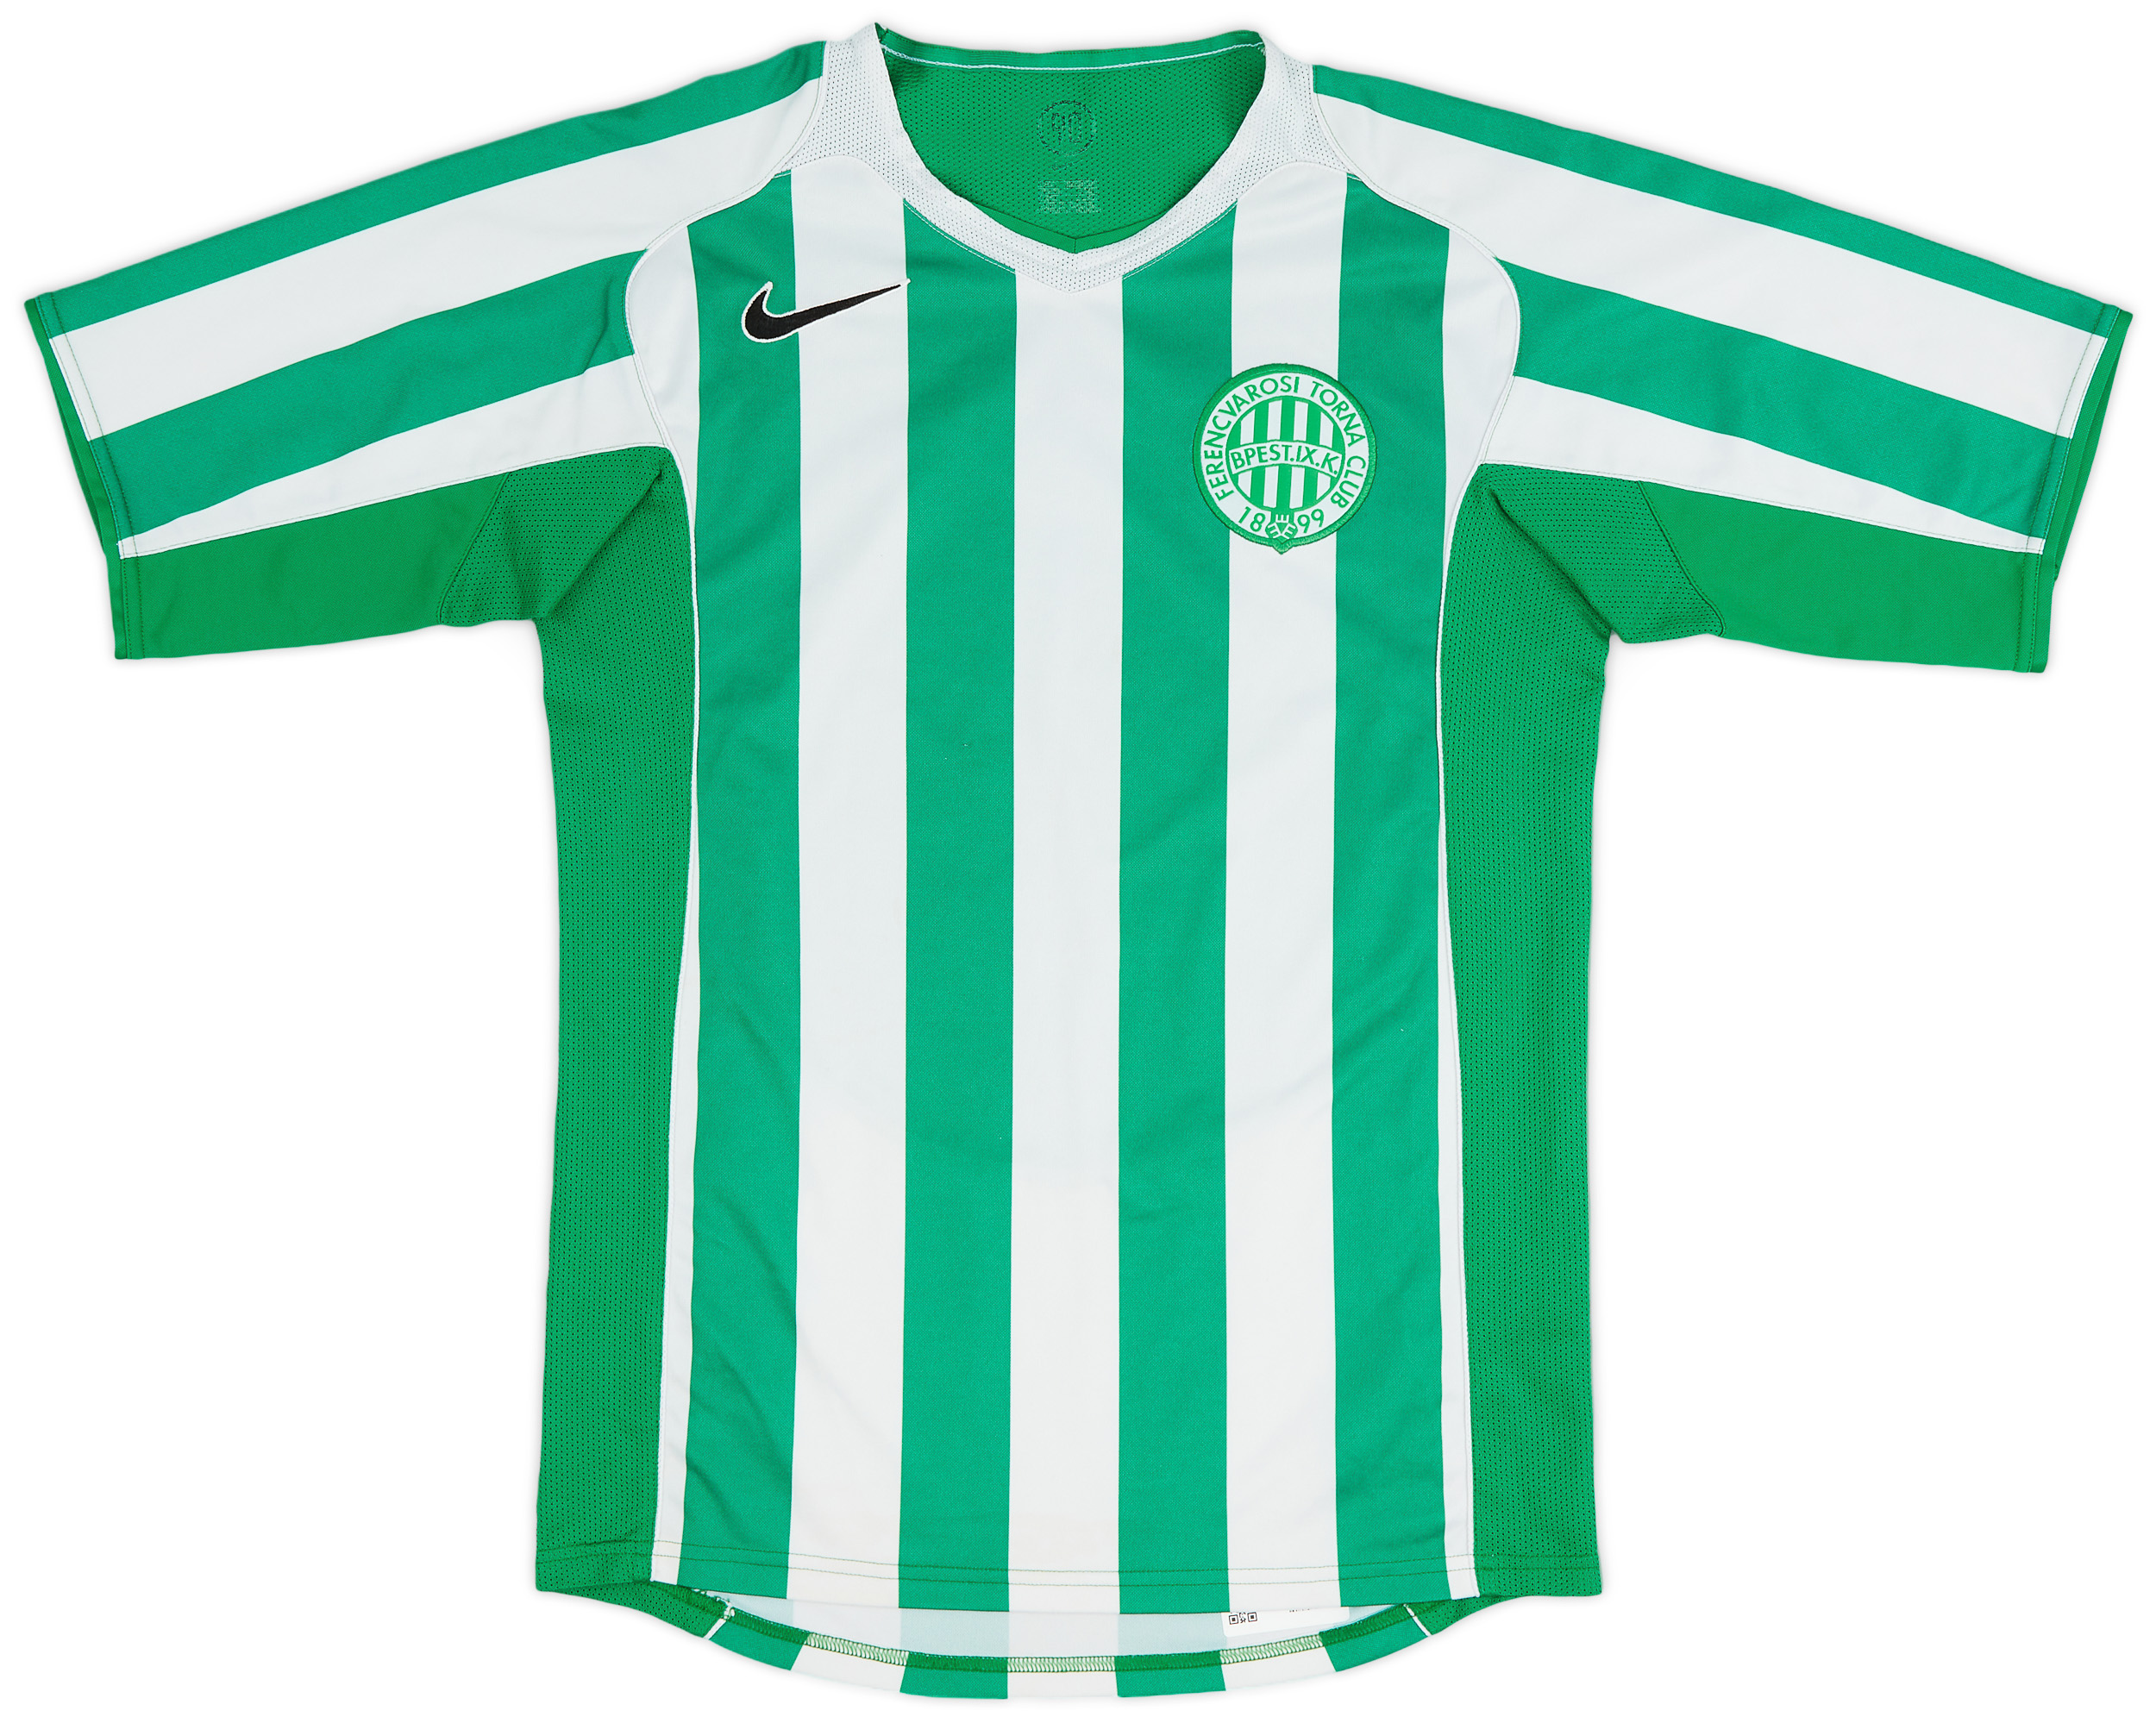 Ferencvaros  home camisa (Original)